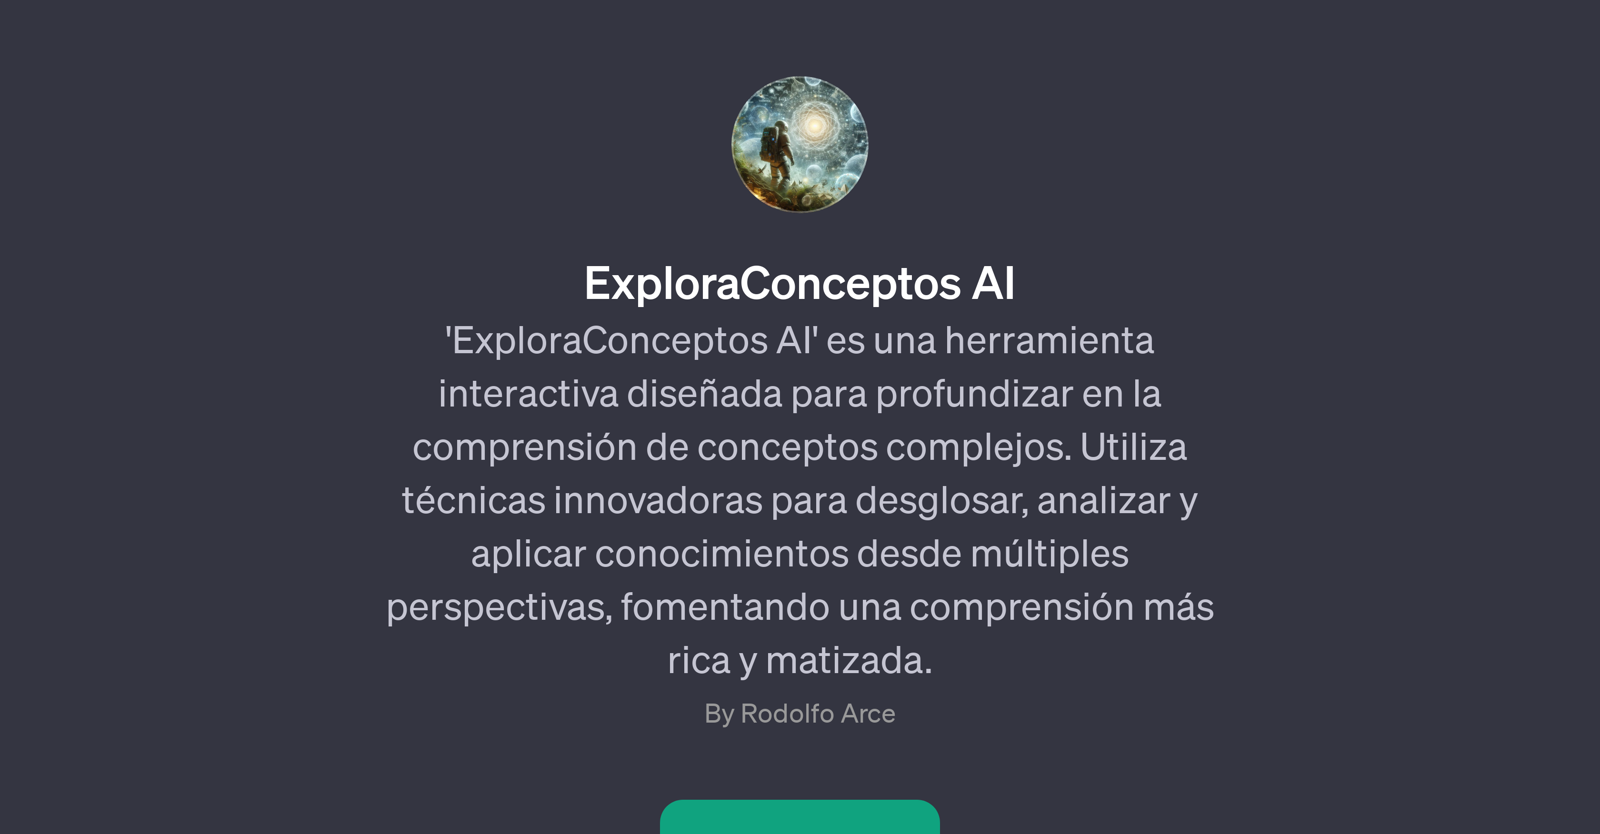 ExploraConceptos AI website